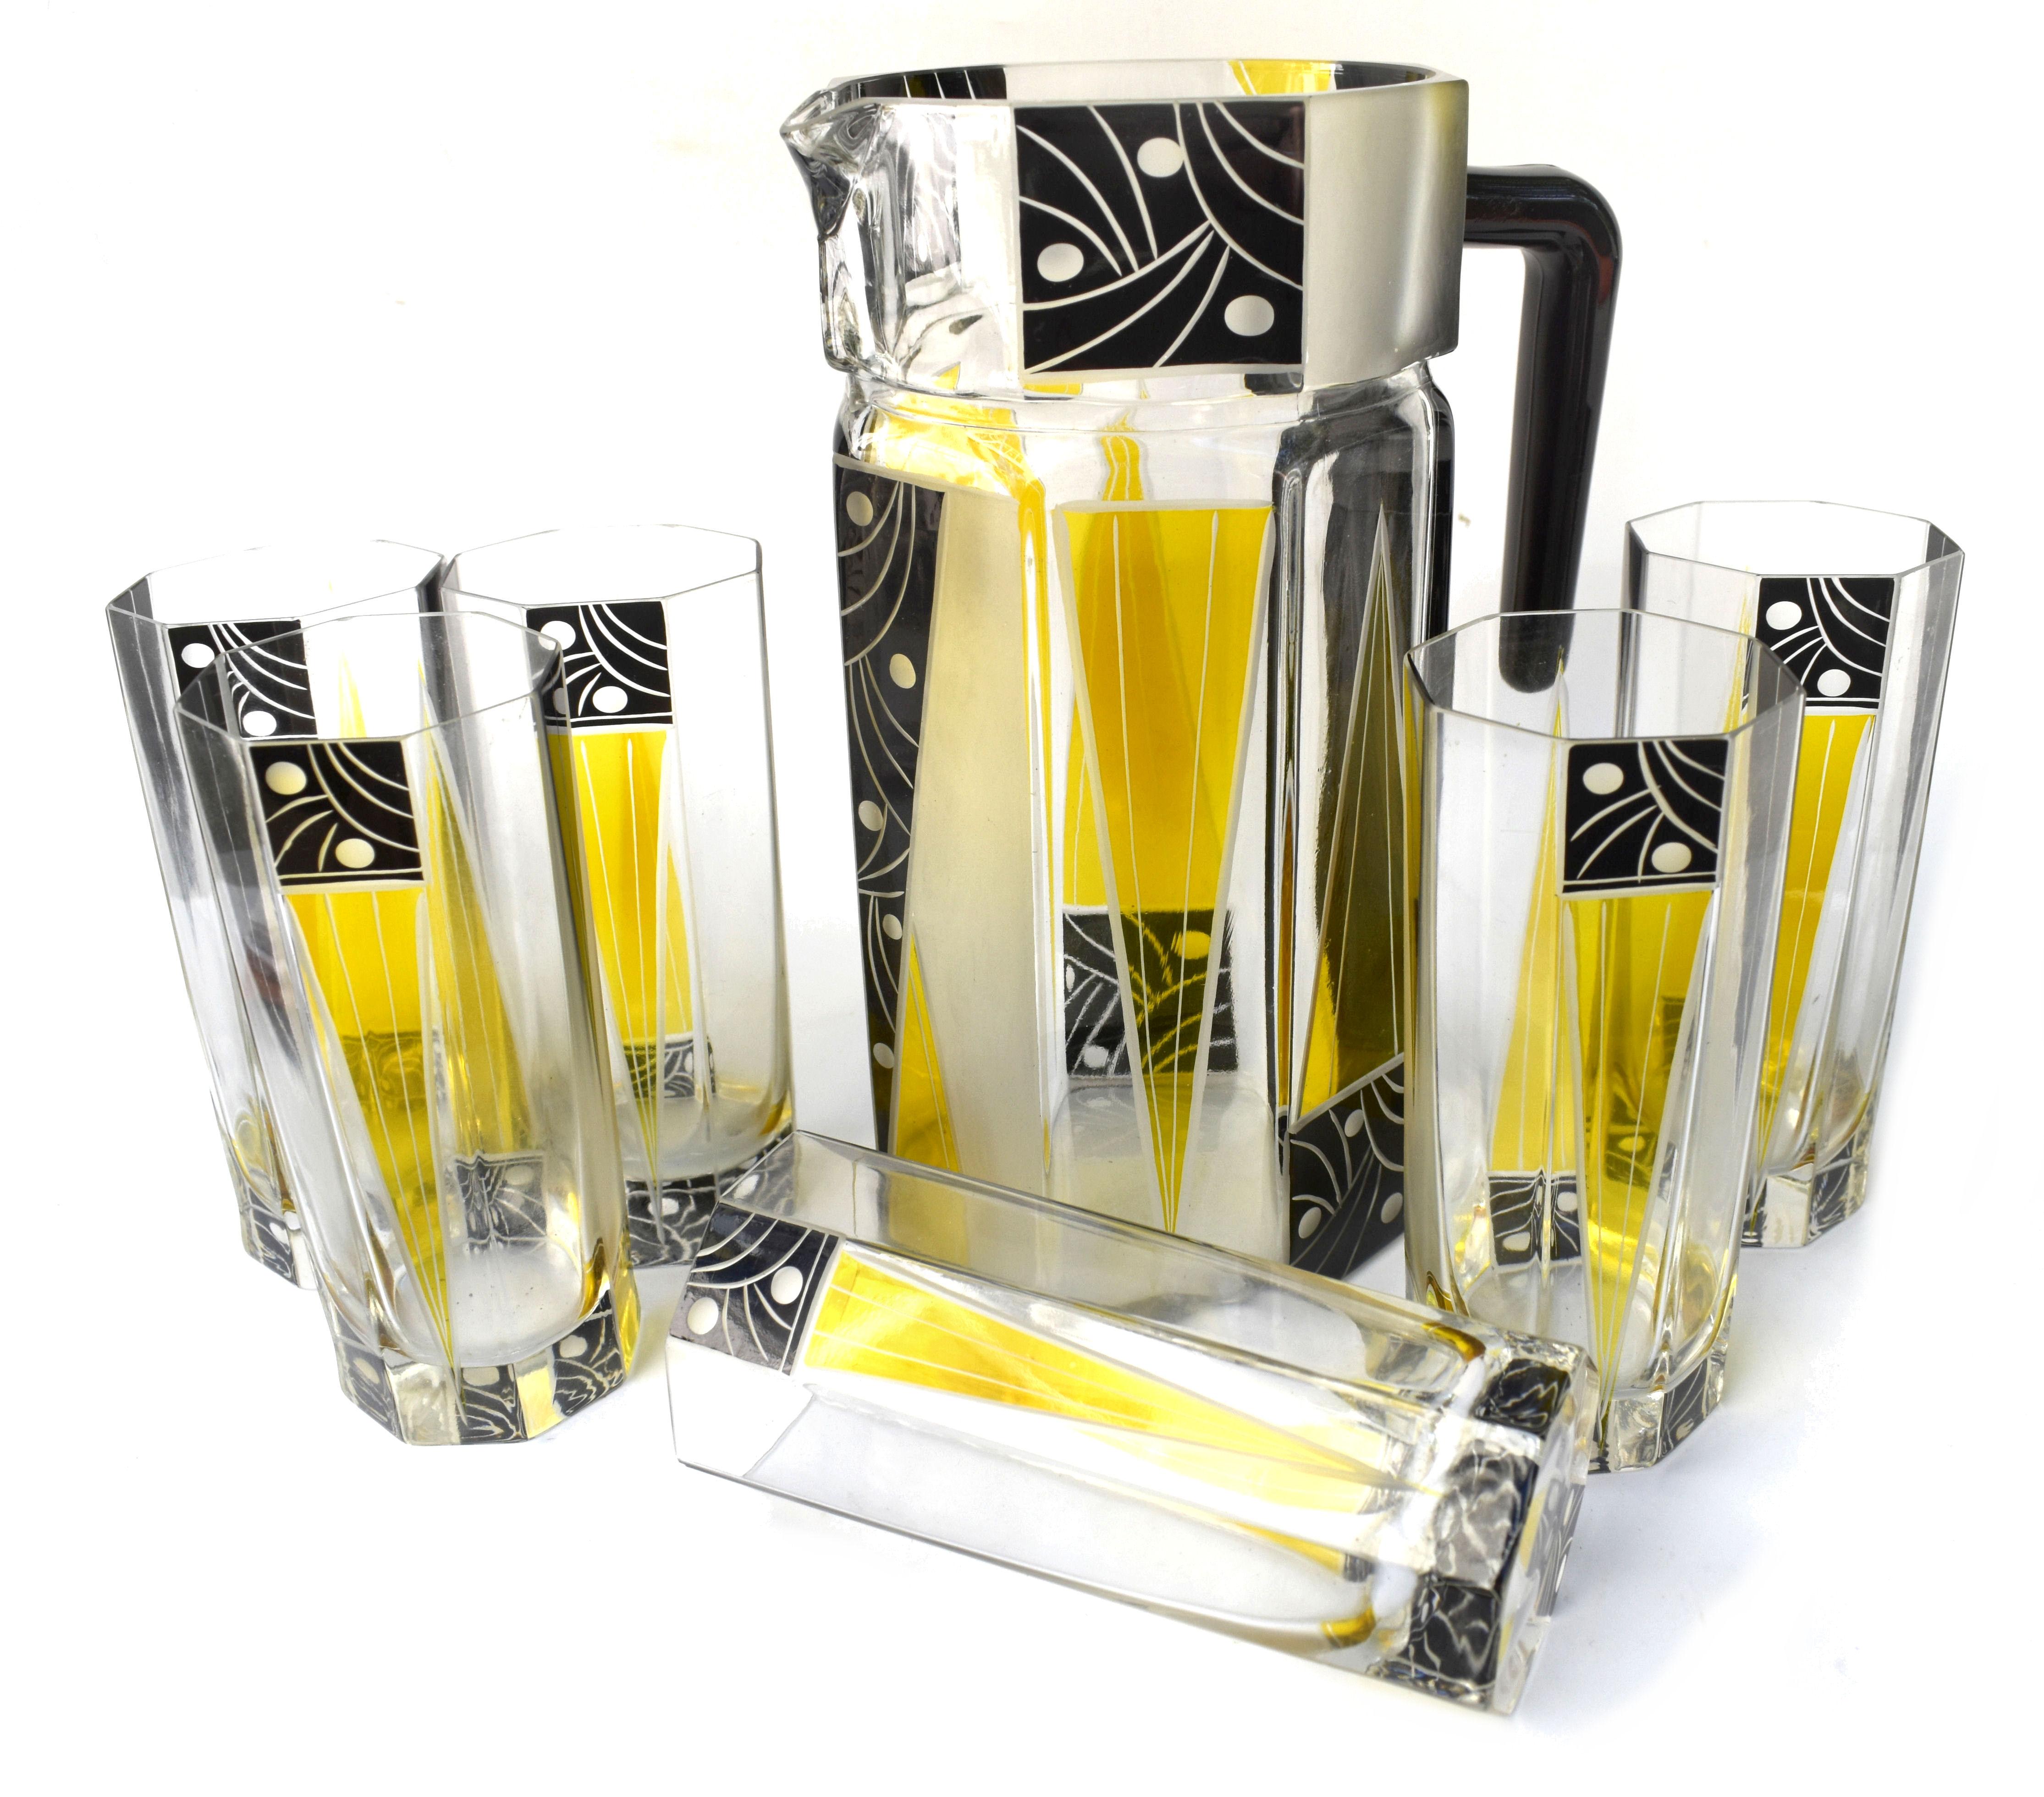 Sehr hochwertiges, sehr auffällig aussehendes Limonaden-Set aus tschechischem Glas im Art-Déco-Stil der 1930er Jahre. Mit einem Kristallkrug in klassischer Form und sechs passenden Gläsern (Höhe 14 cm, Durchmesser 6 cm). Das gesamte Set ist in Gelb